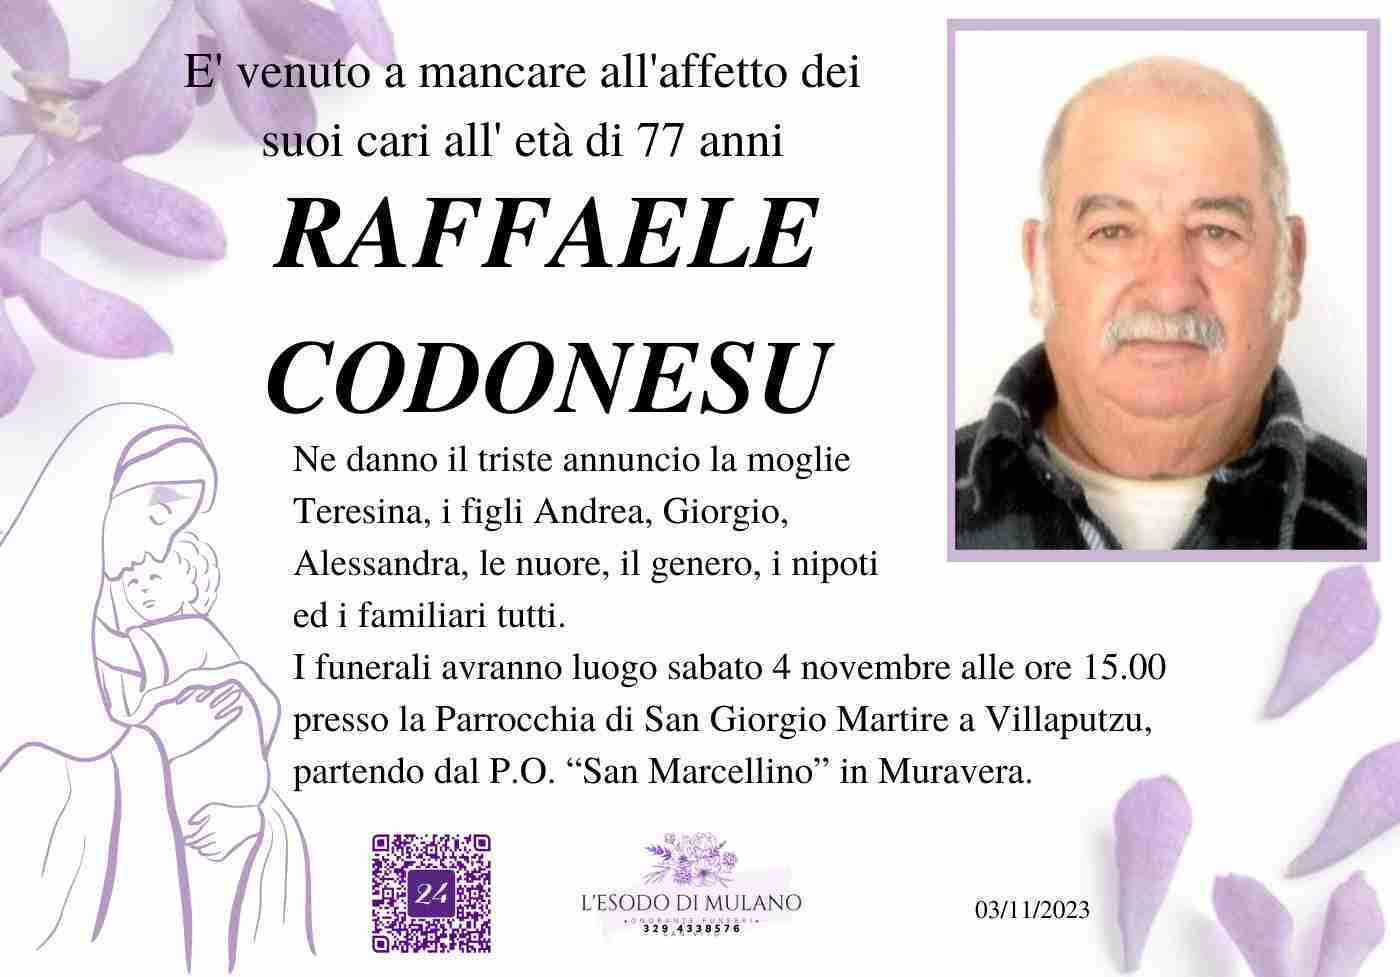 Raffaele Codonesu